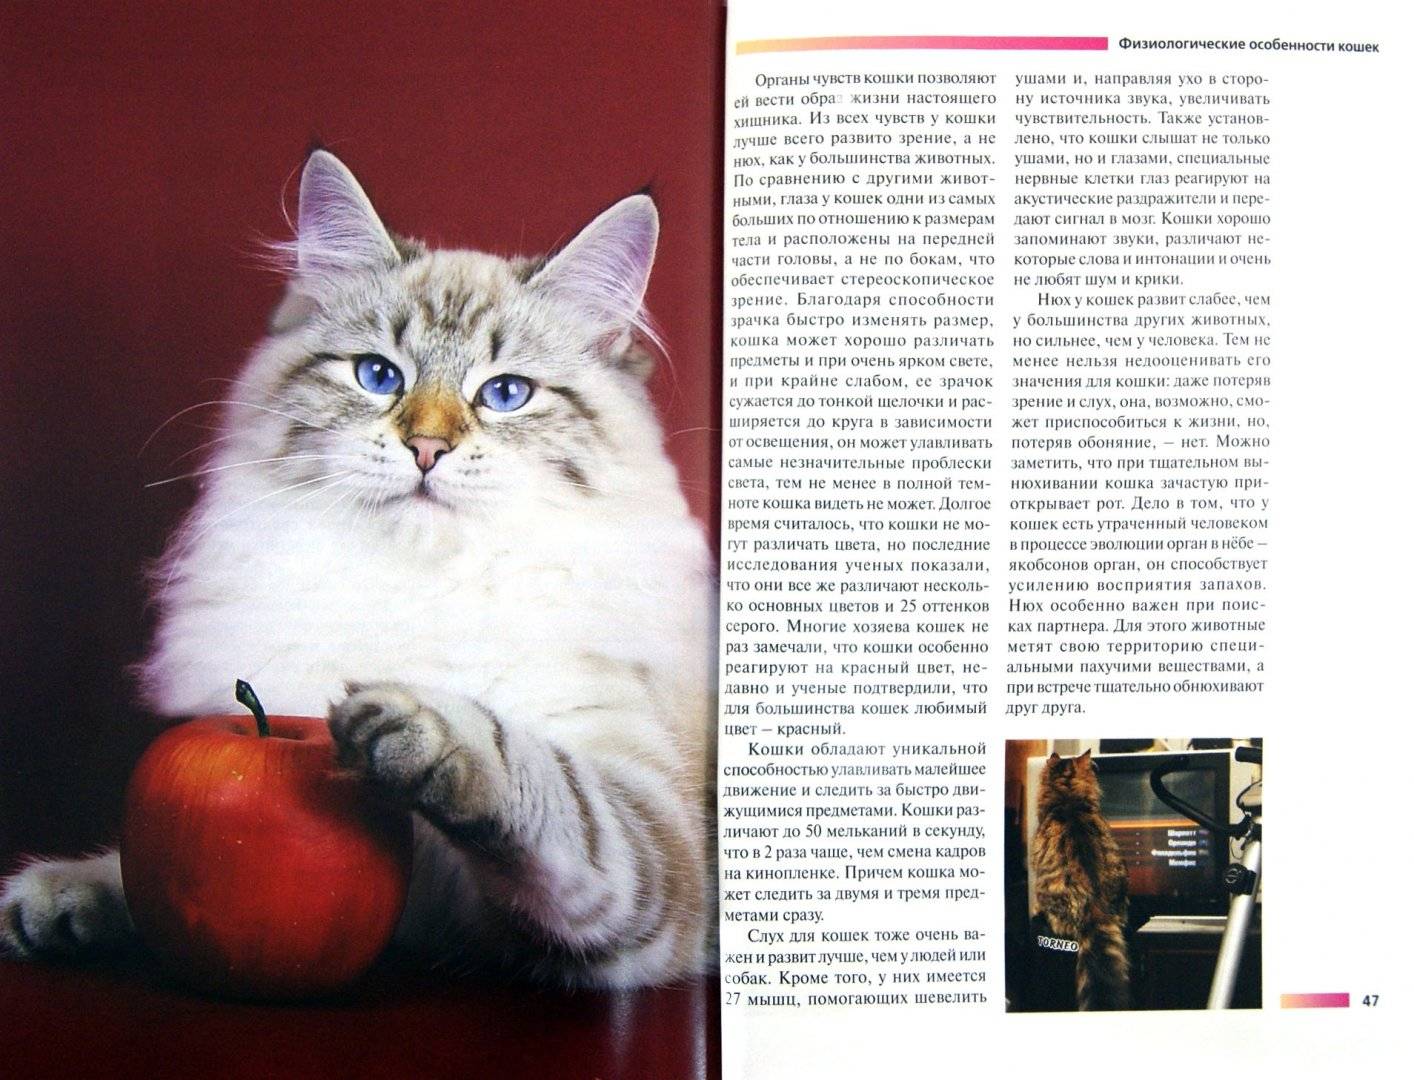 Сибирская кошка: фото, описание породы, характер, здоровье, уход и содержание